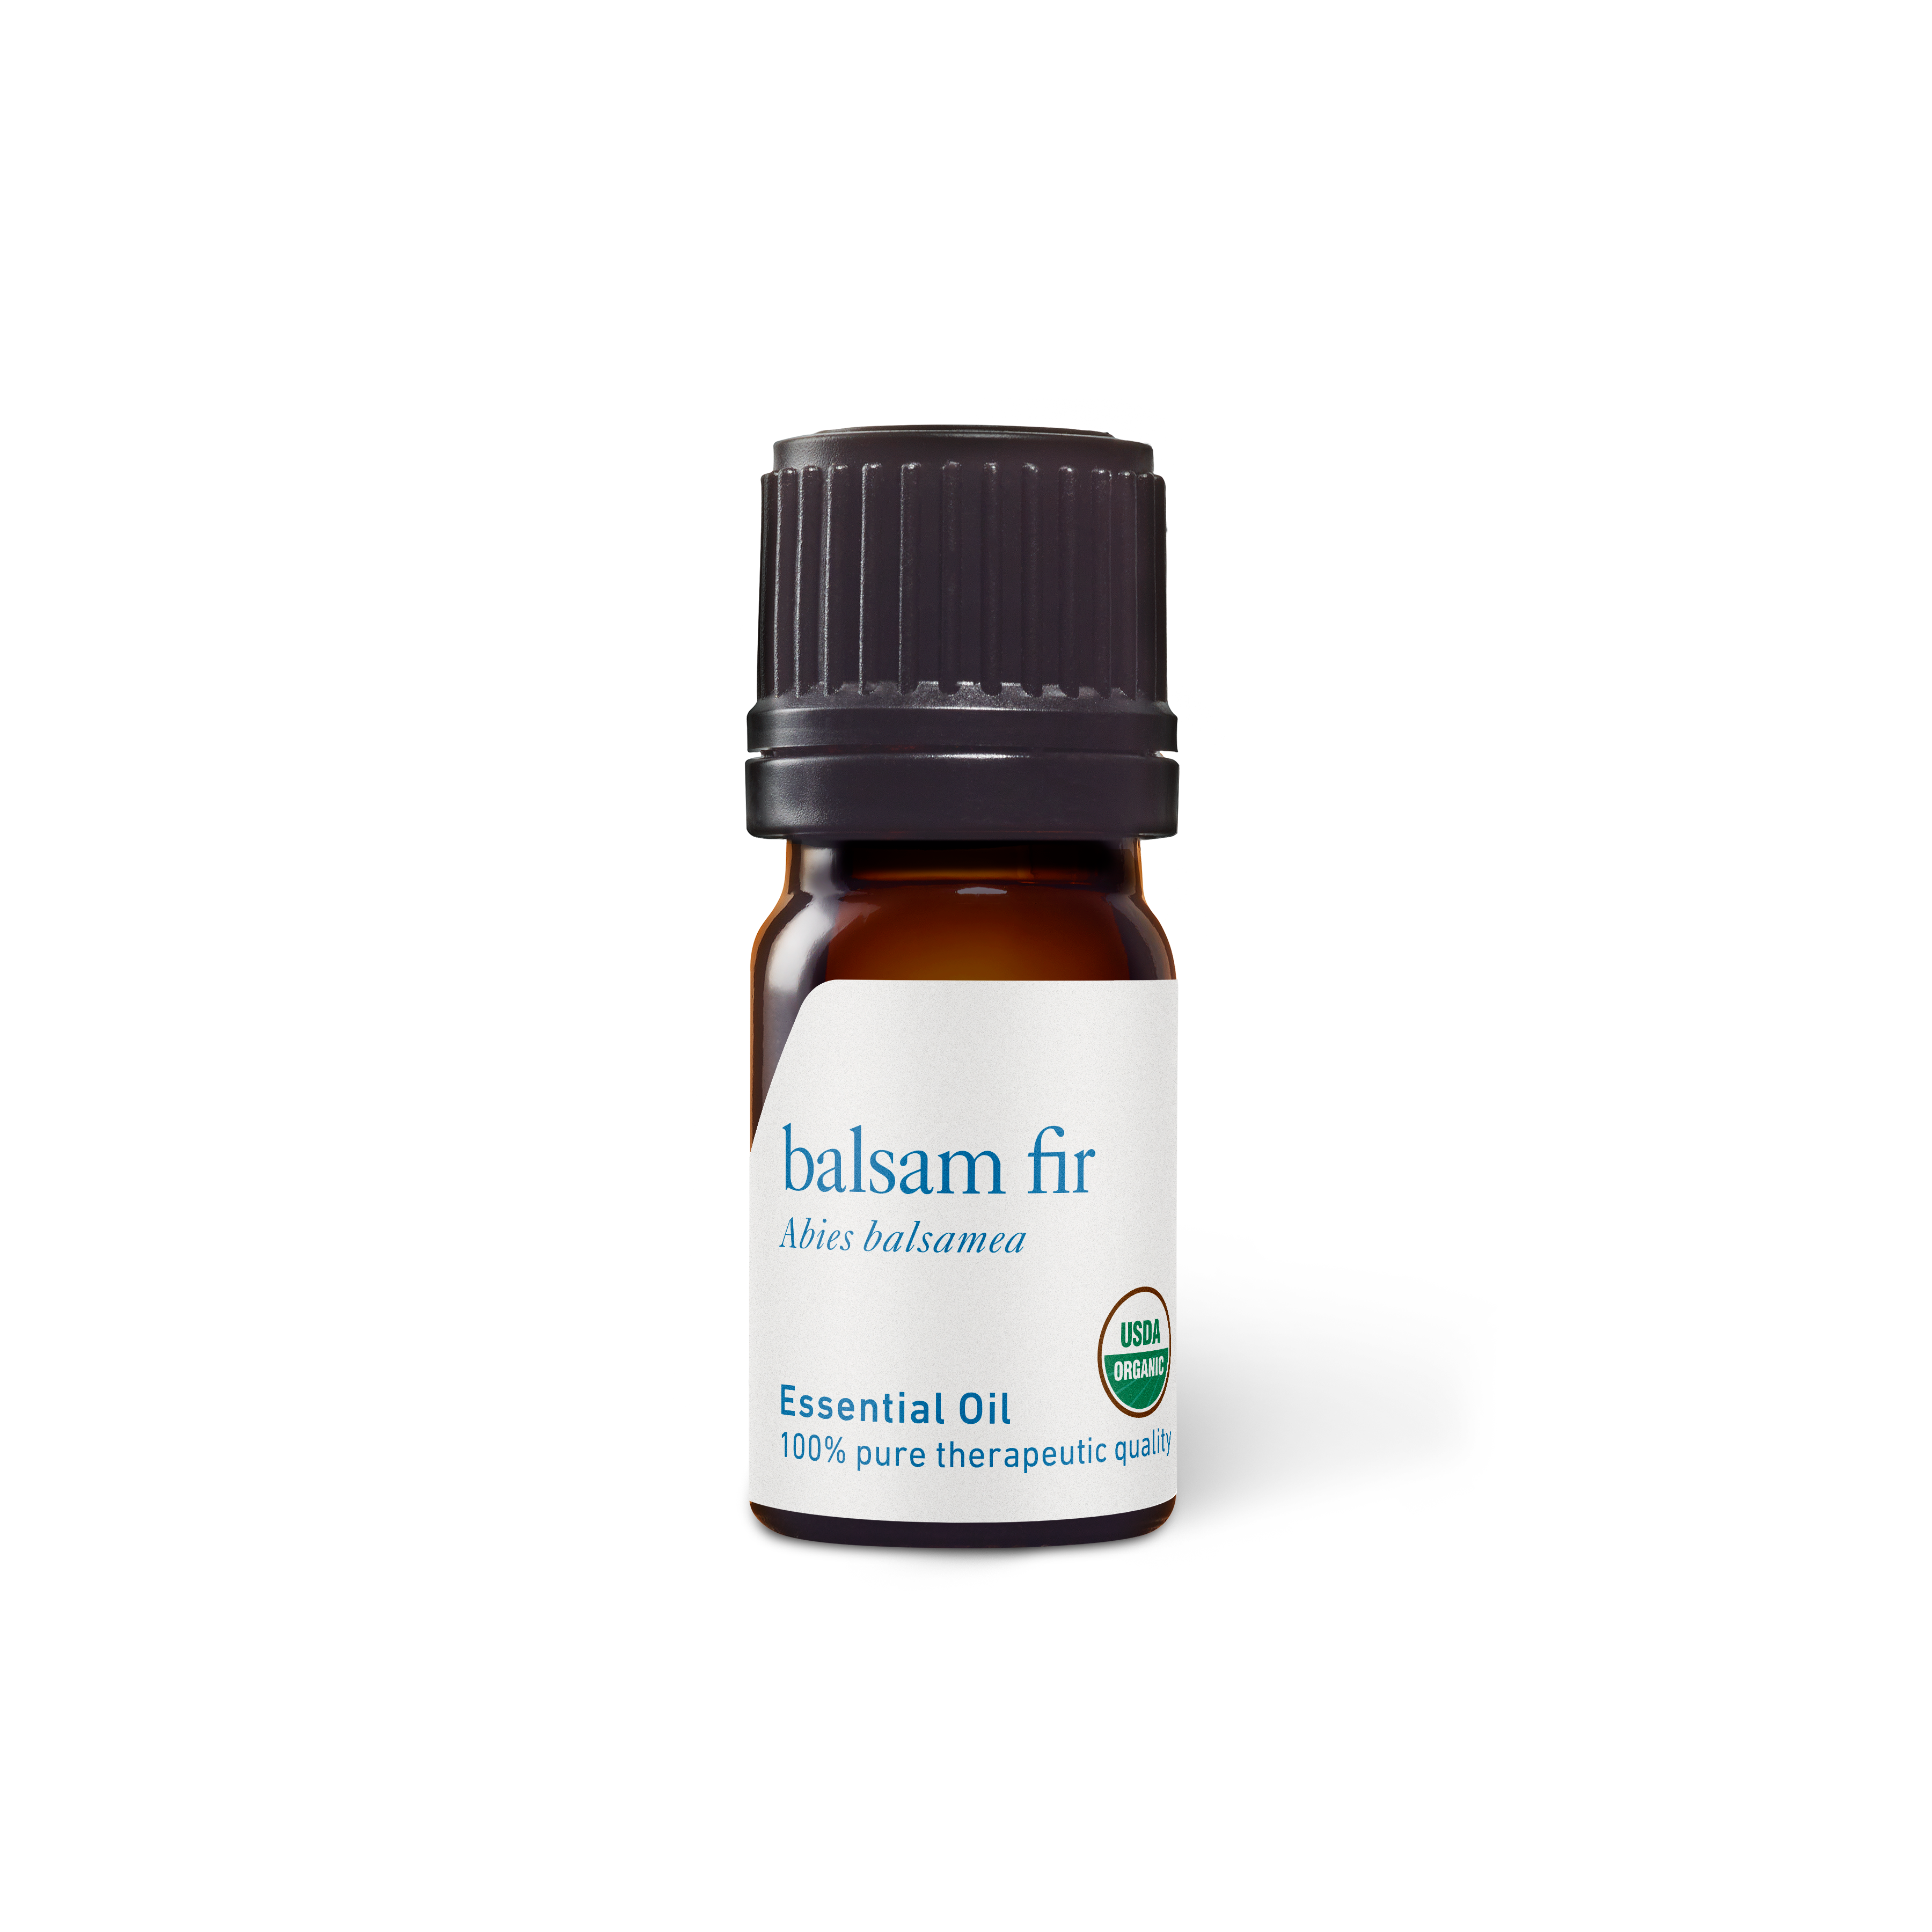 Organic Balsam Fir Essential Oil - Aromatics International